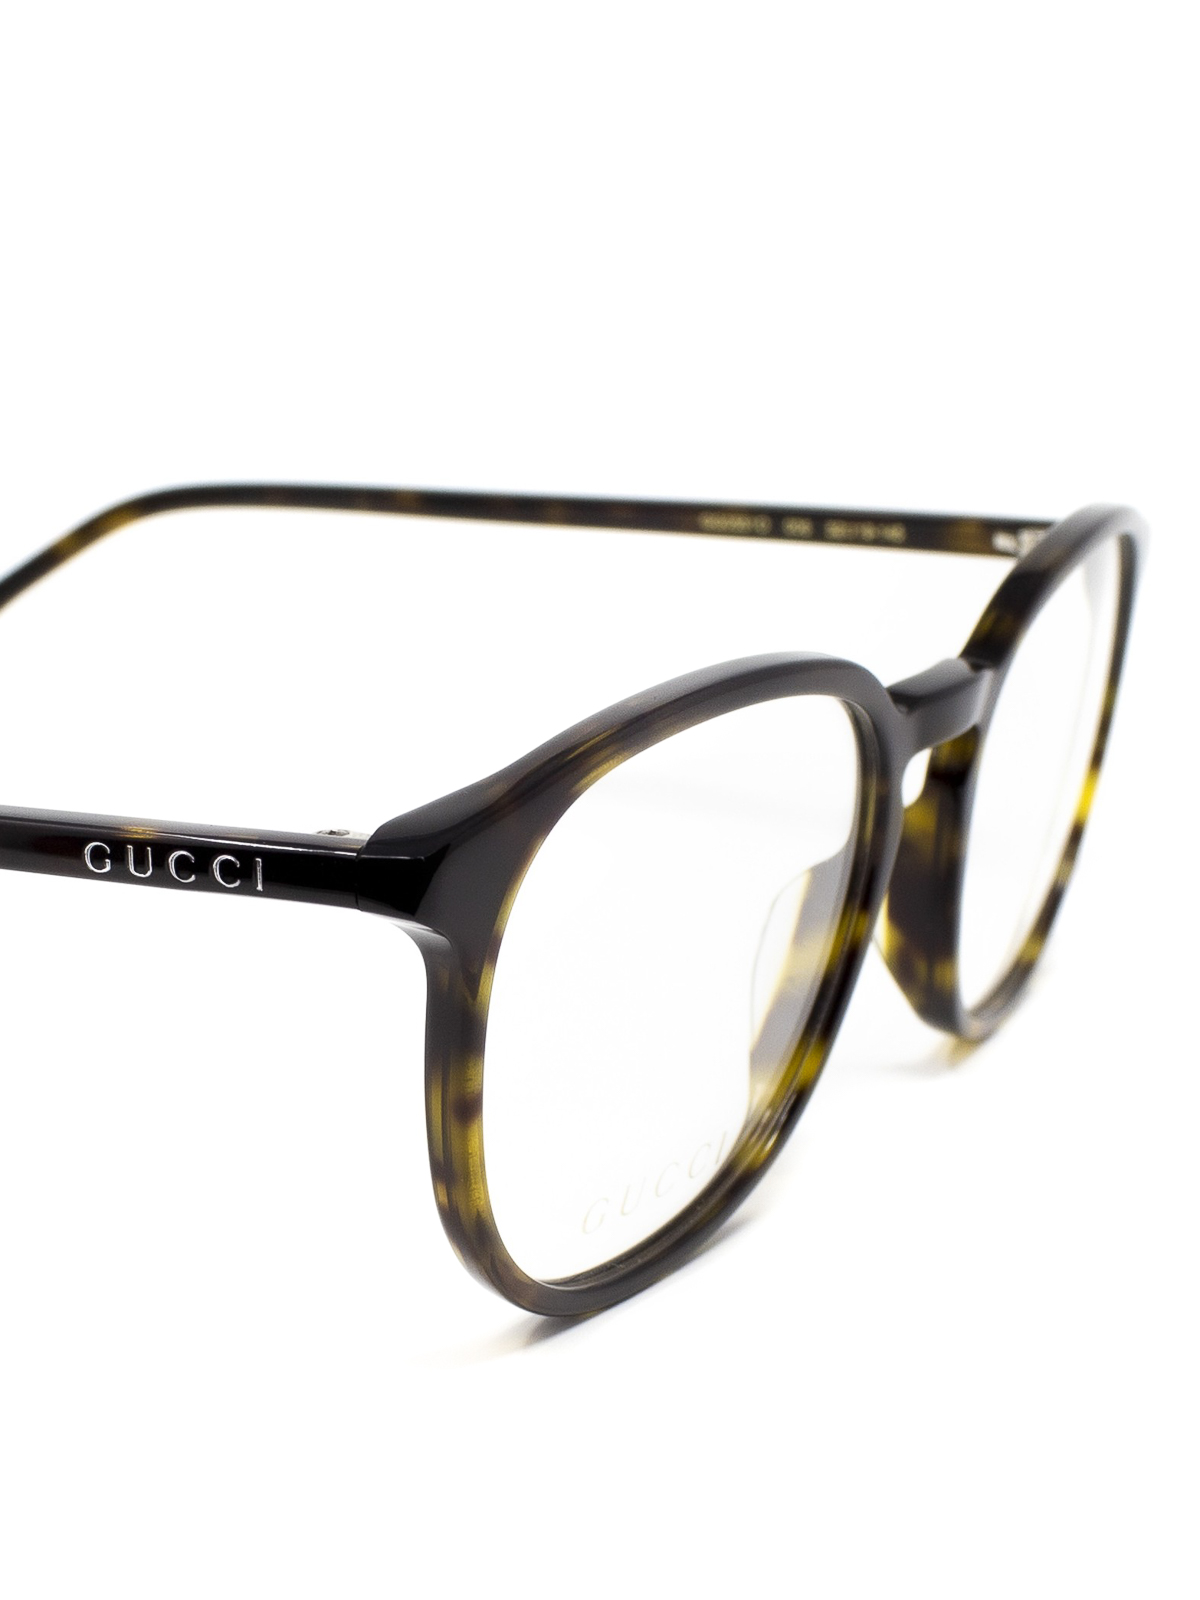 Glasses Gucci Tortoise Frame Eyeglasses Gg0551o006